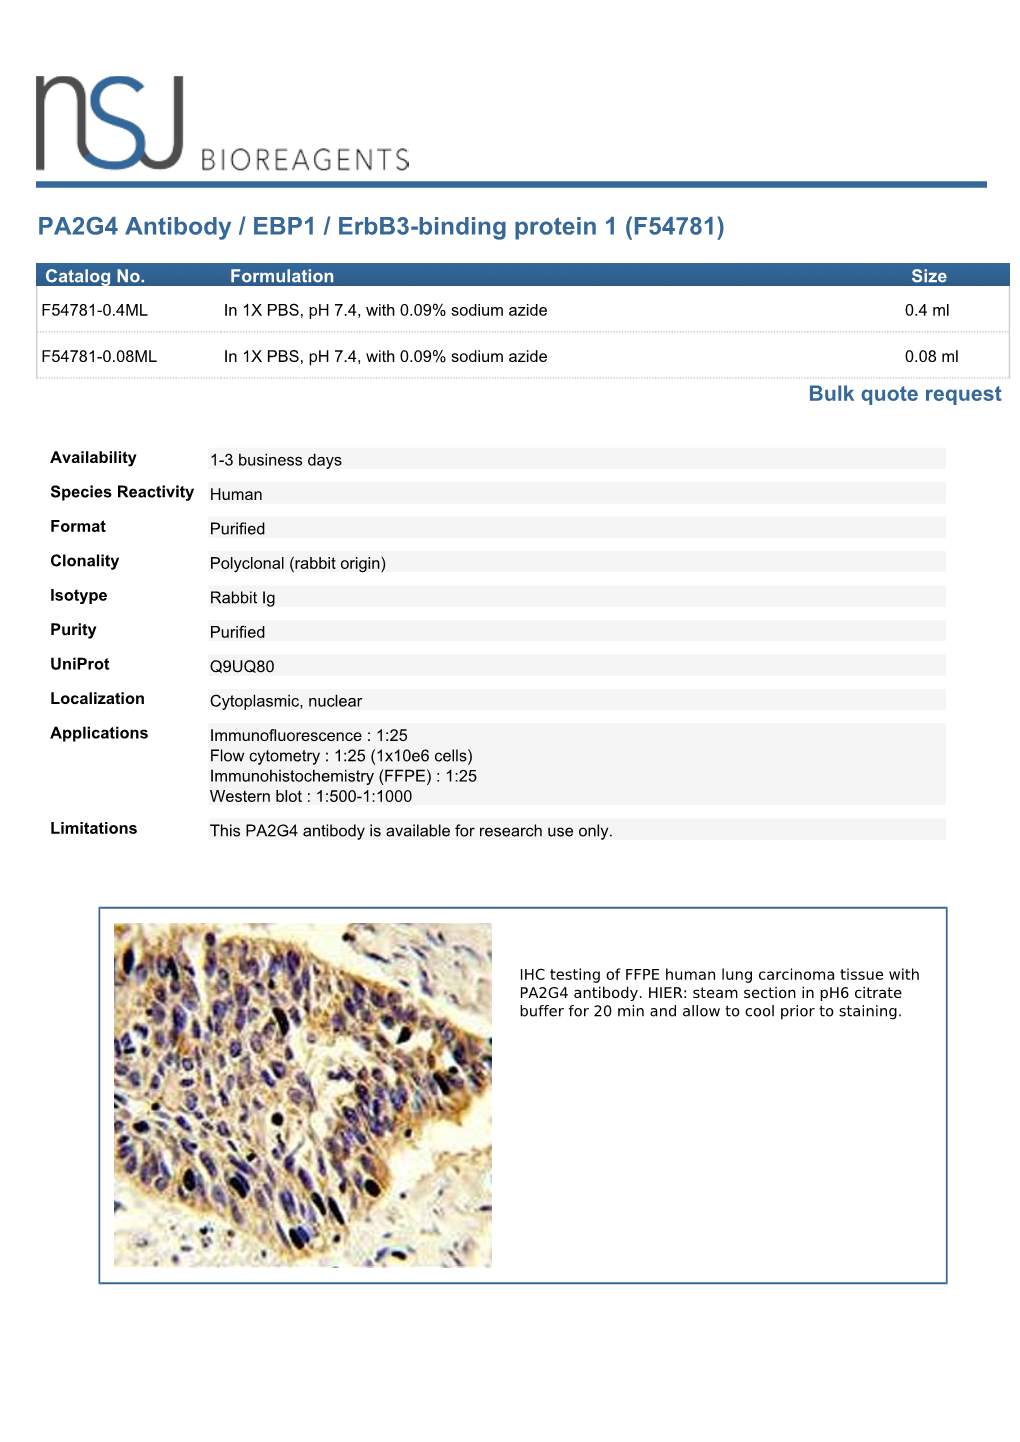 PA2G4 Antibody (F54781)